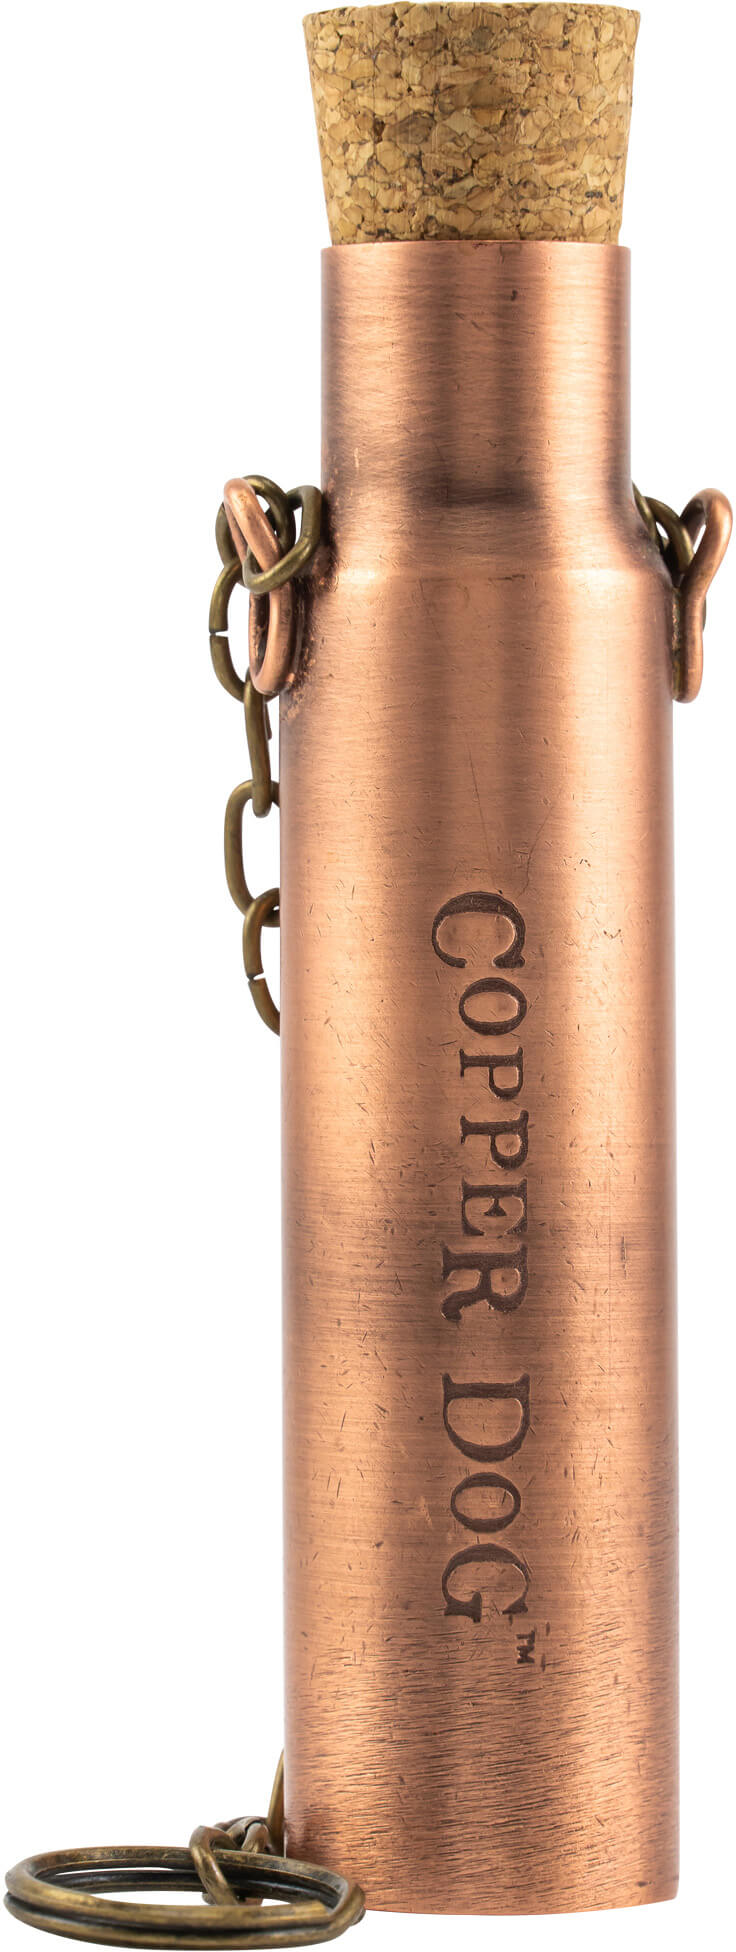 Copper Dog Dipper